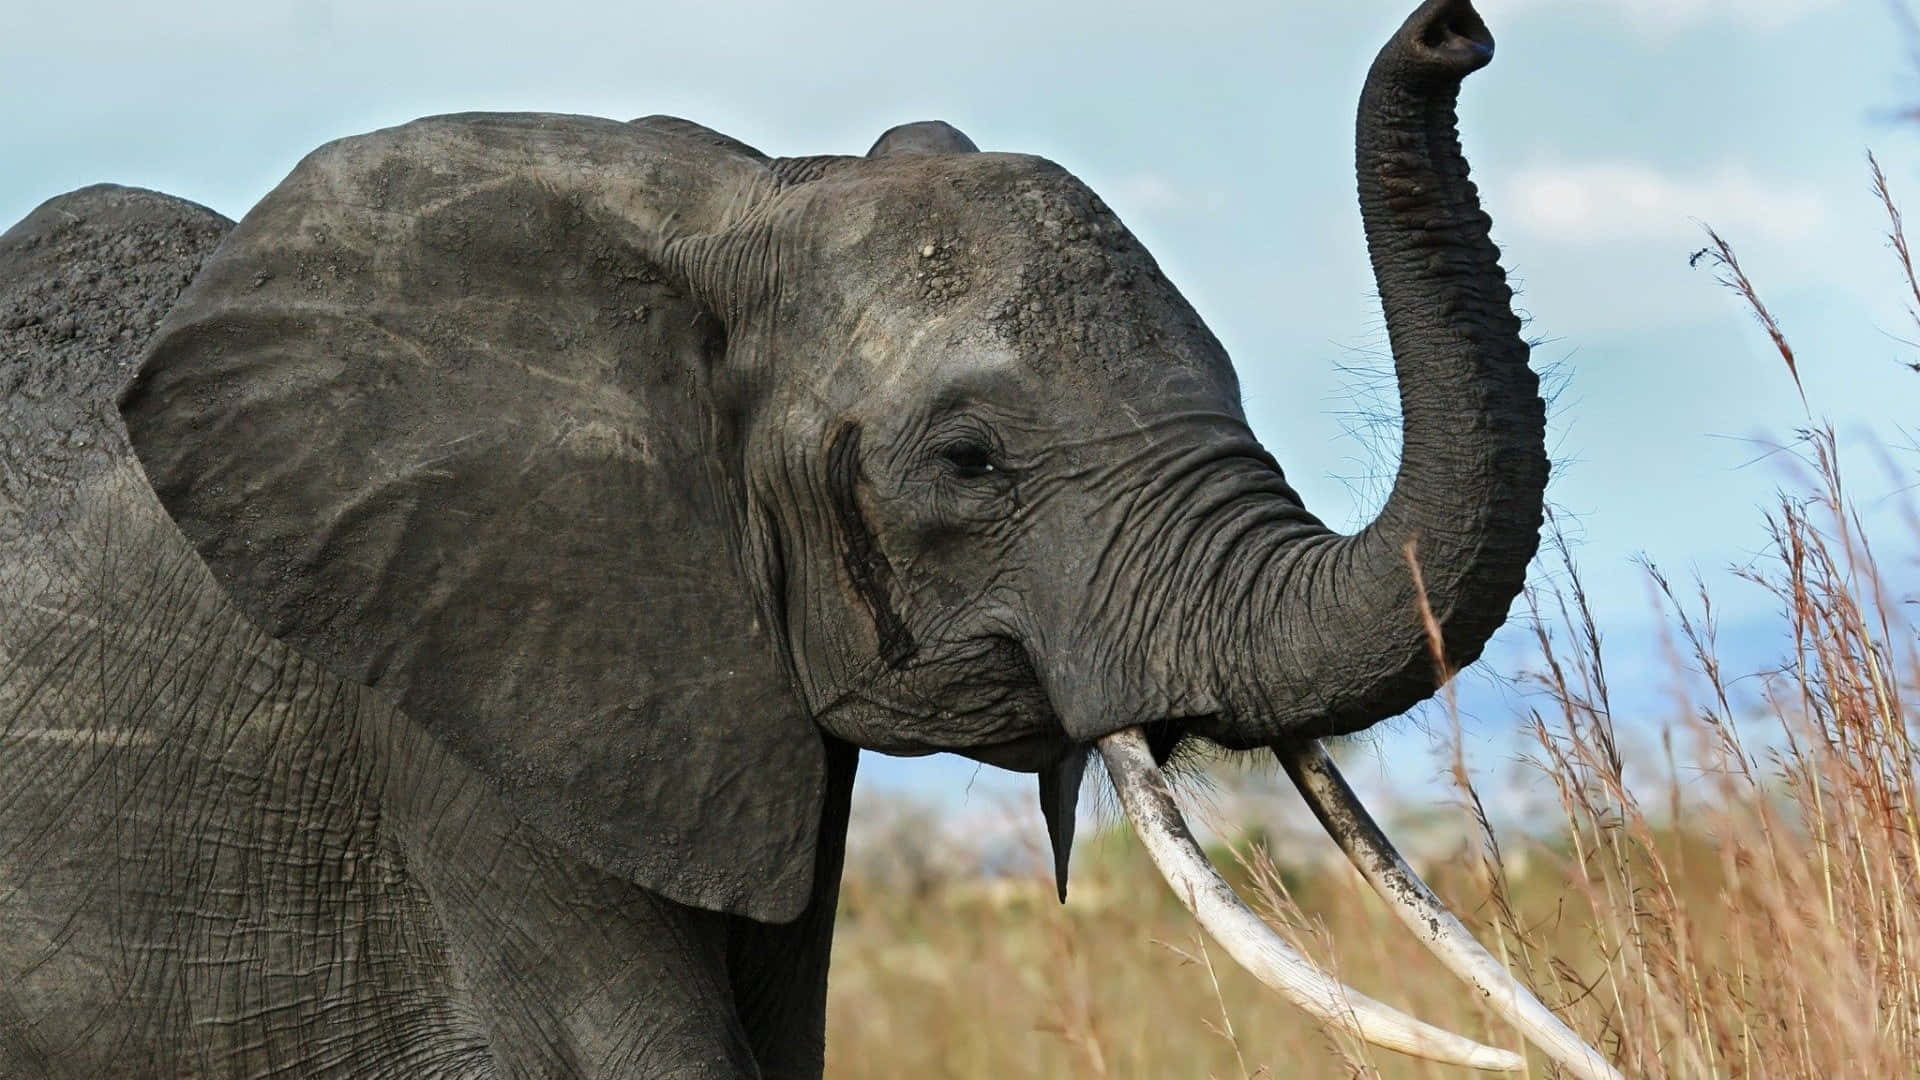 Einmajestätischer Afrikanischer Elefant Steht Allein In Einem Weiten Offenen Raum.